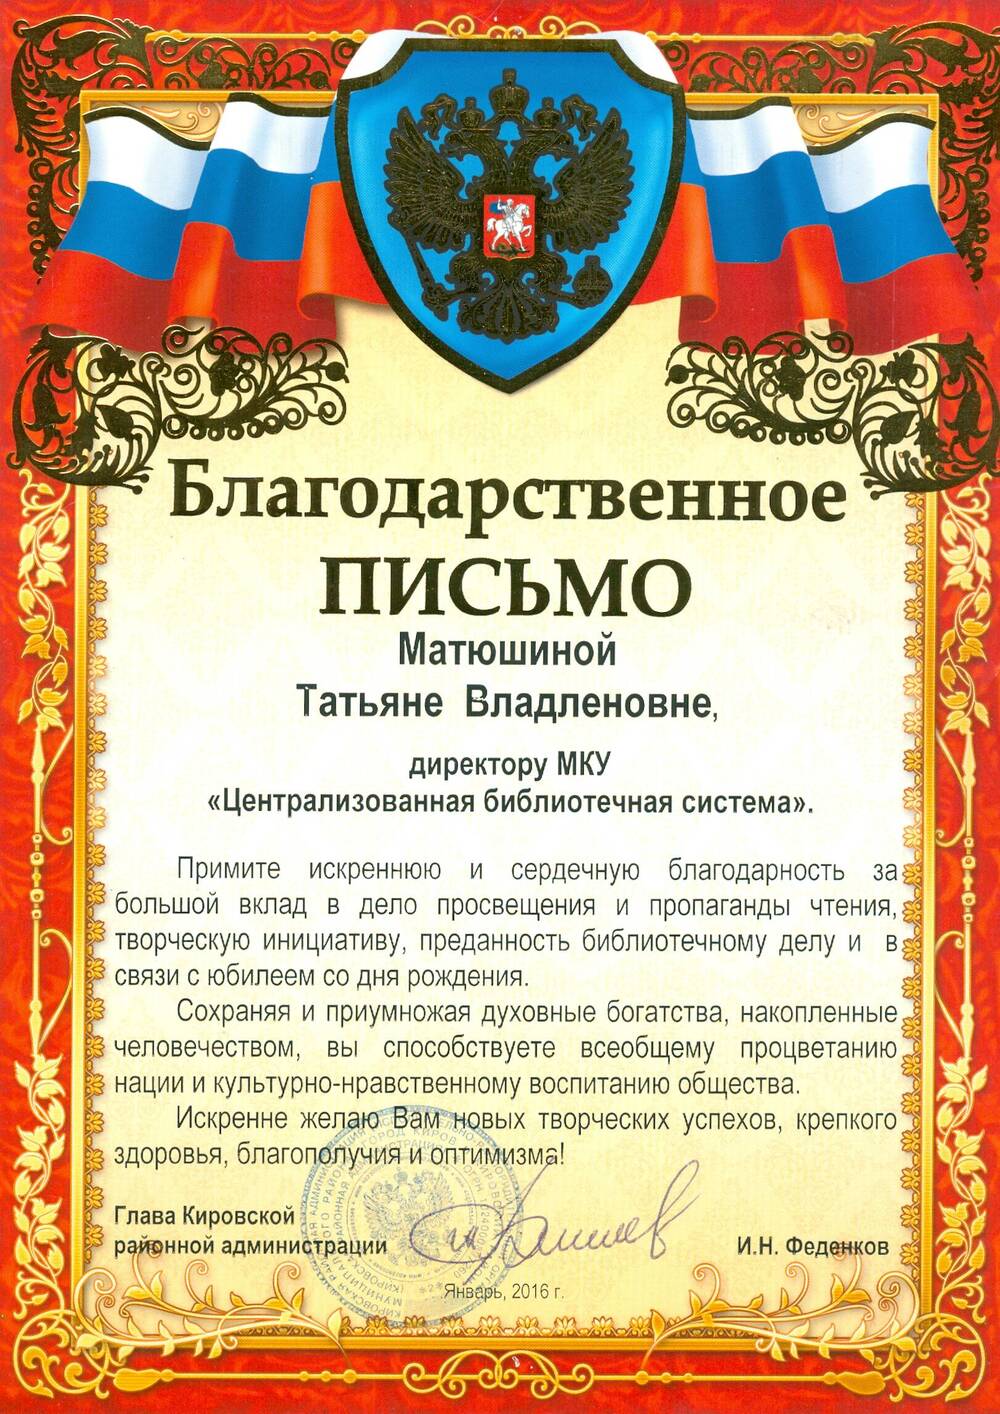 Благодарственное письмо Матюшиной Т. В. от главы Кировской районной администрации